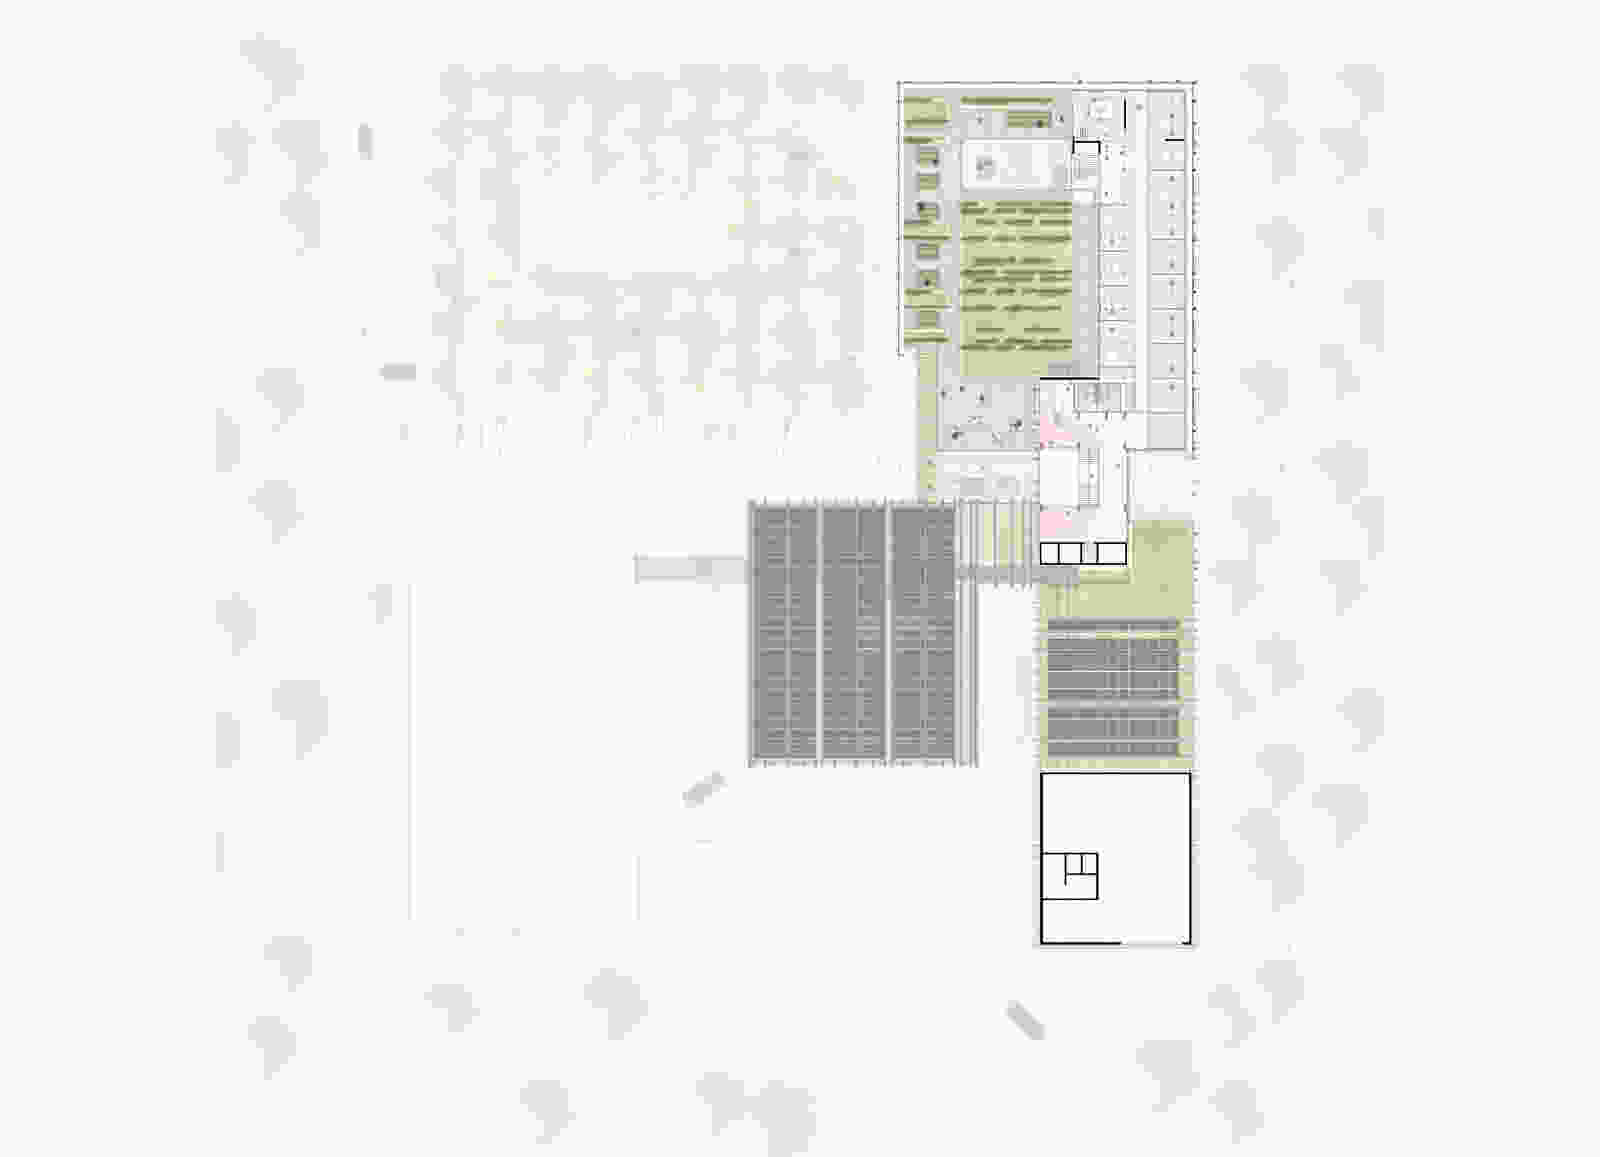 503 dmaa Helmholtz Quantum Center plan a floor plan level 3